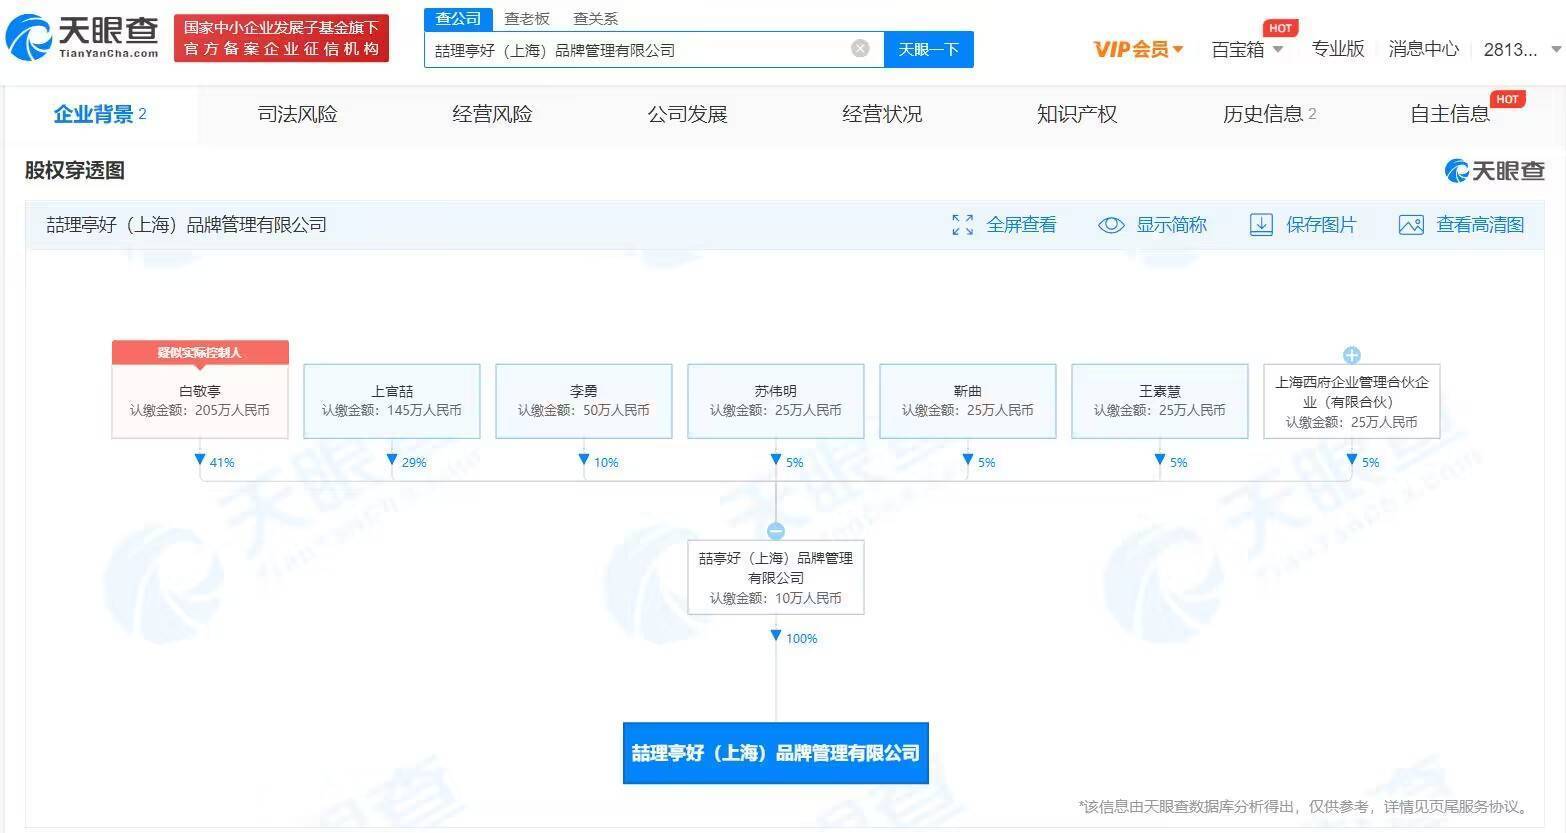 喆理亭好(上海)品牌管理有限公司成立 法定代表人为李勇